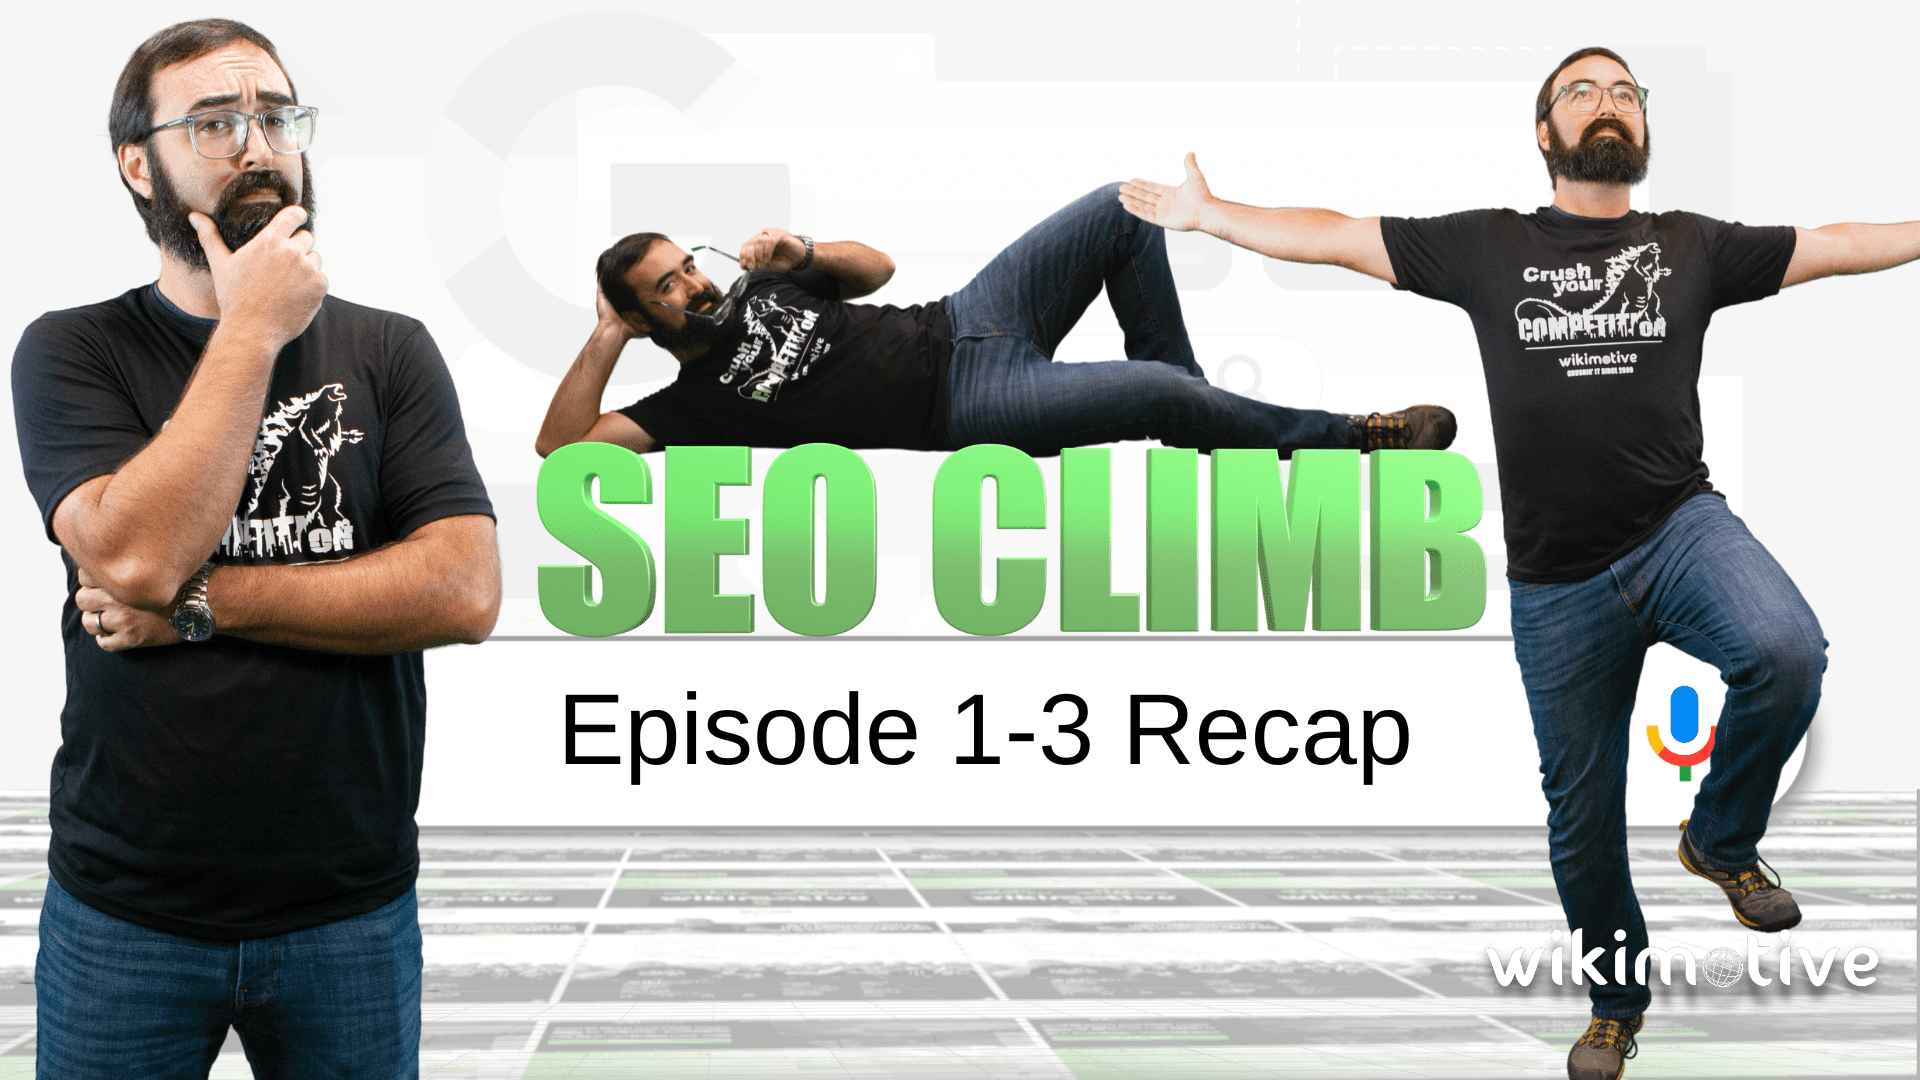 SEO Climb Video Series – October Recap